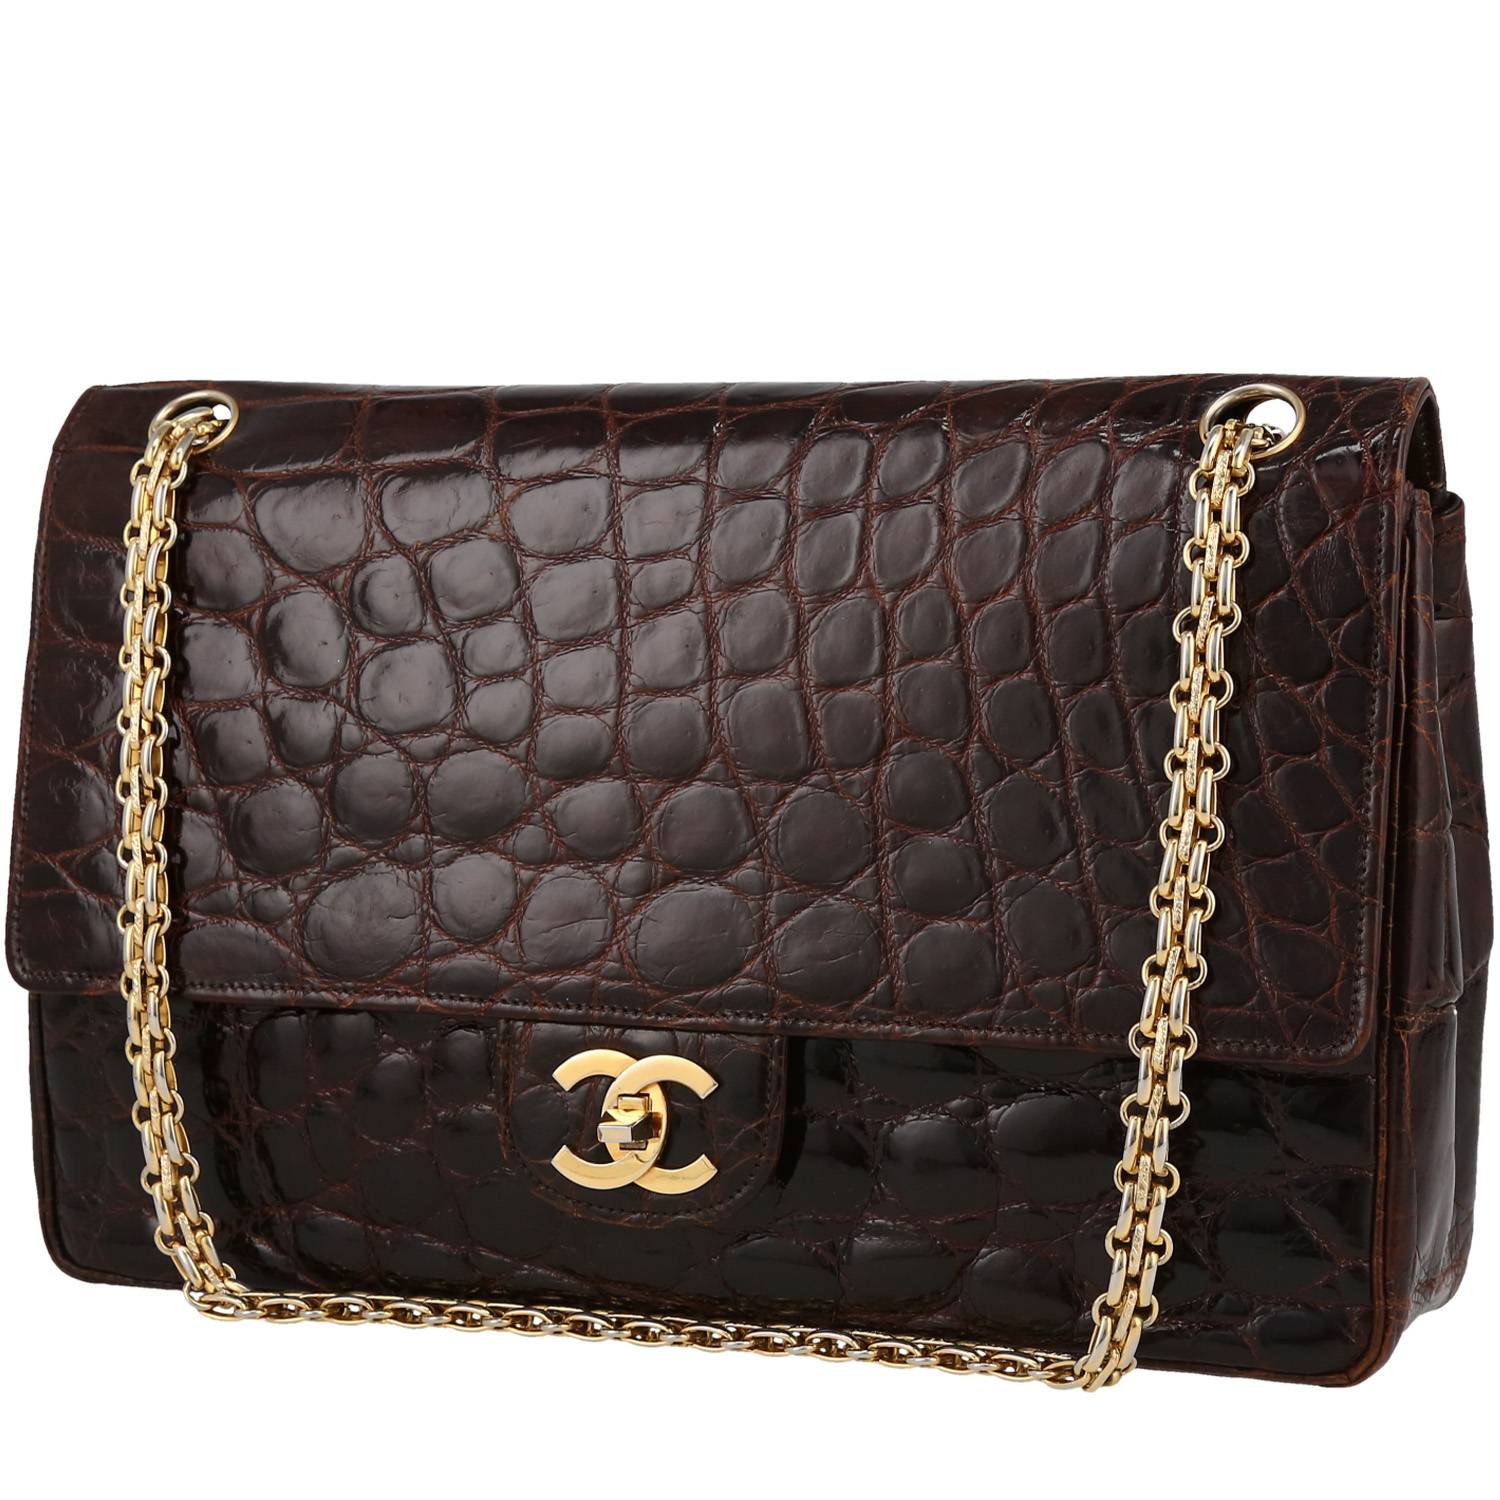 Chanel Vintage Handbag 402773